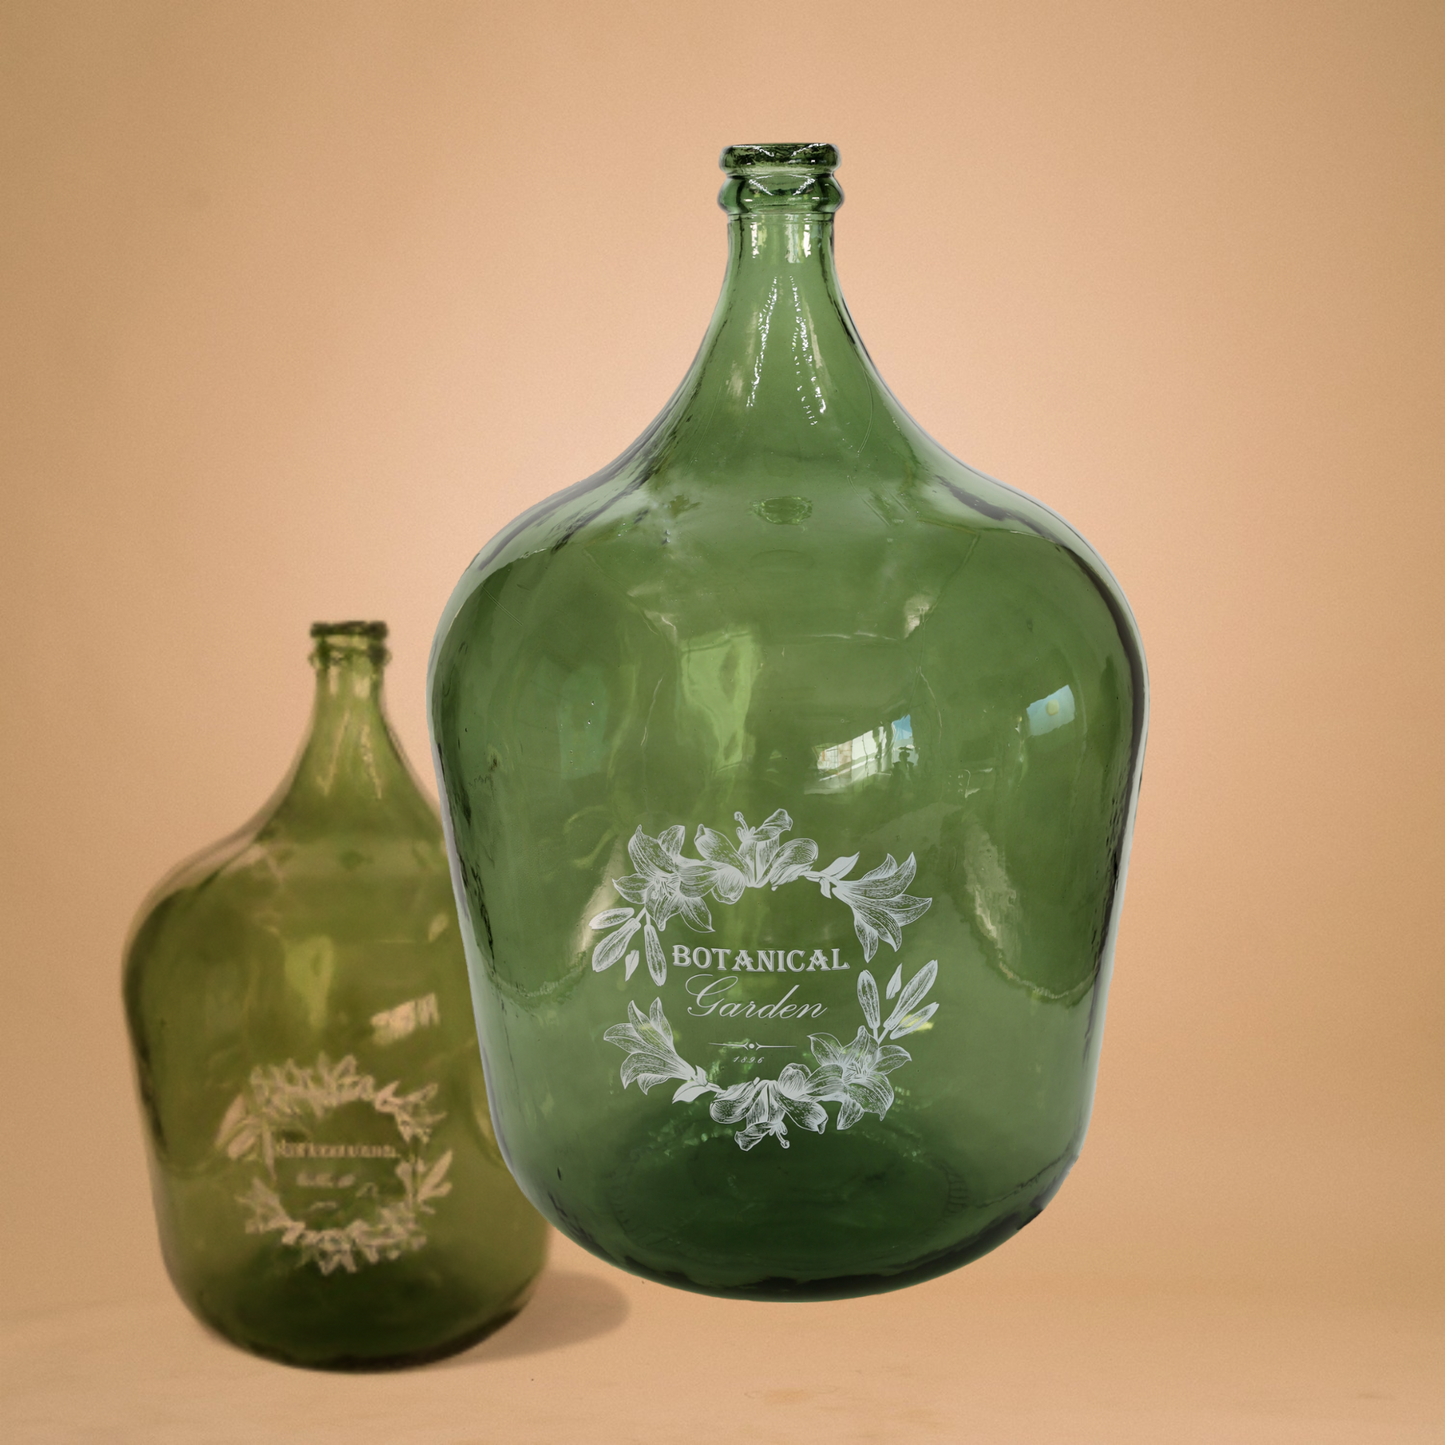 Vase - Flaschenkaraffe "Botanical" 34 l grün mit Aufdruck - 56 cm